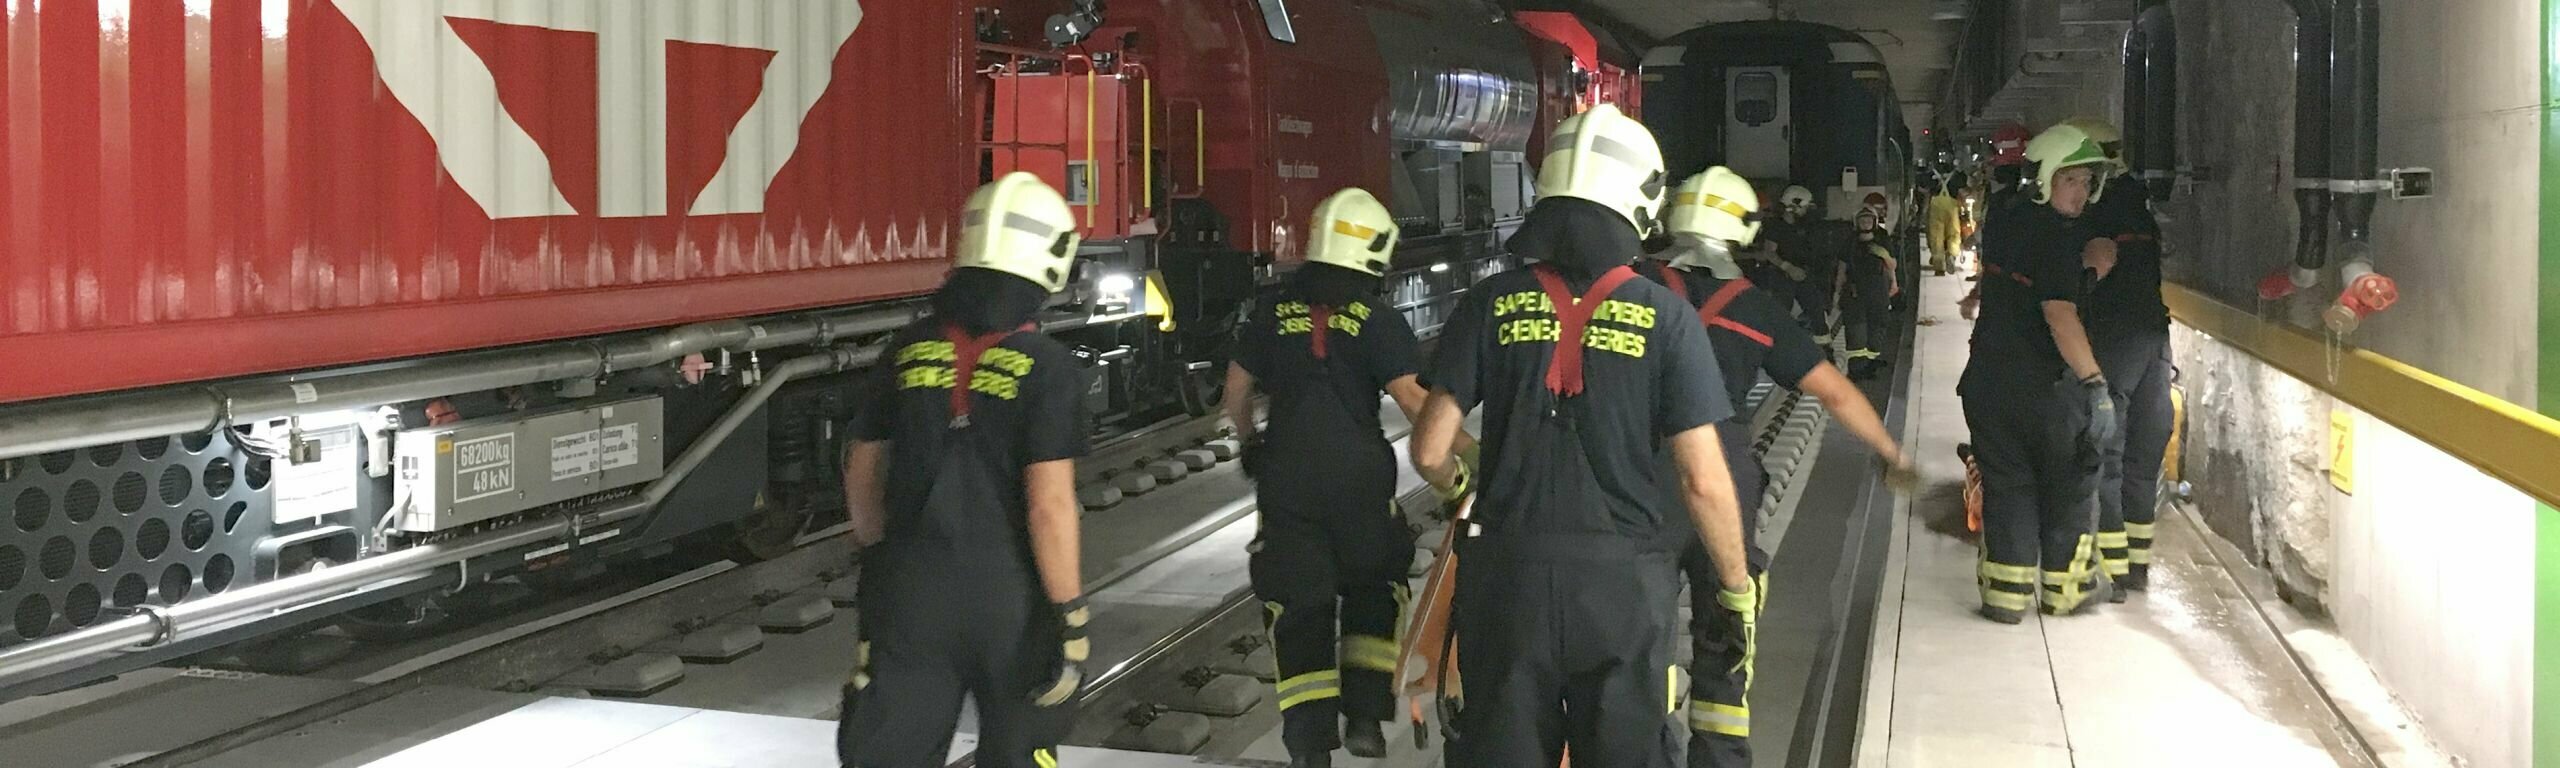 Die Rettungs- und Feuerwehrkräfte im Einsatz im CEVA-Tunnel.